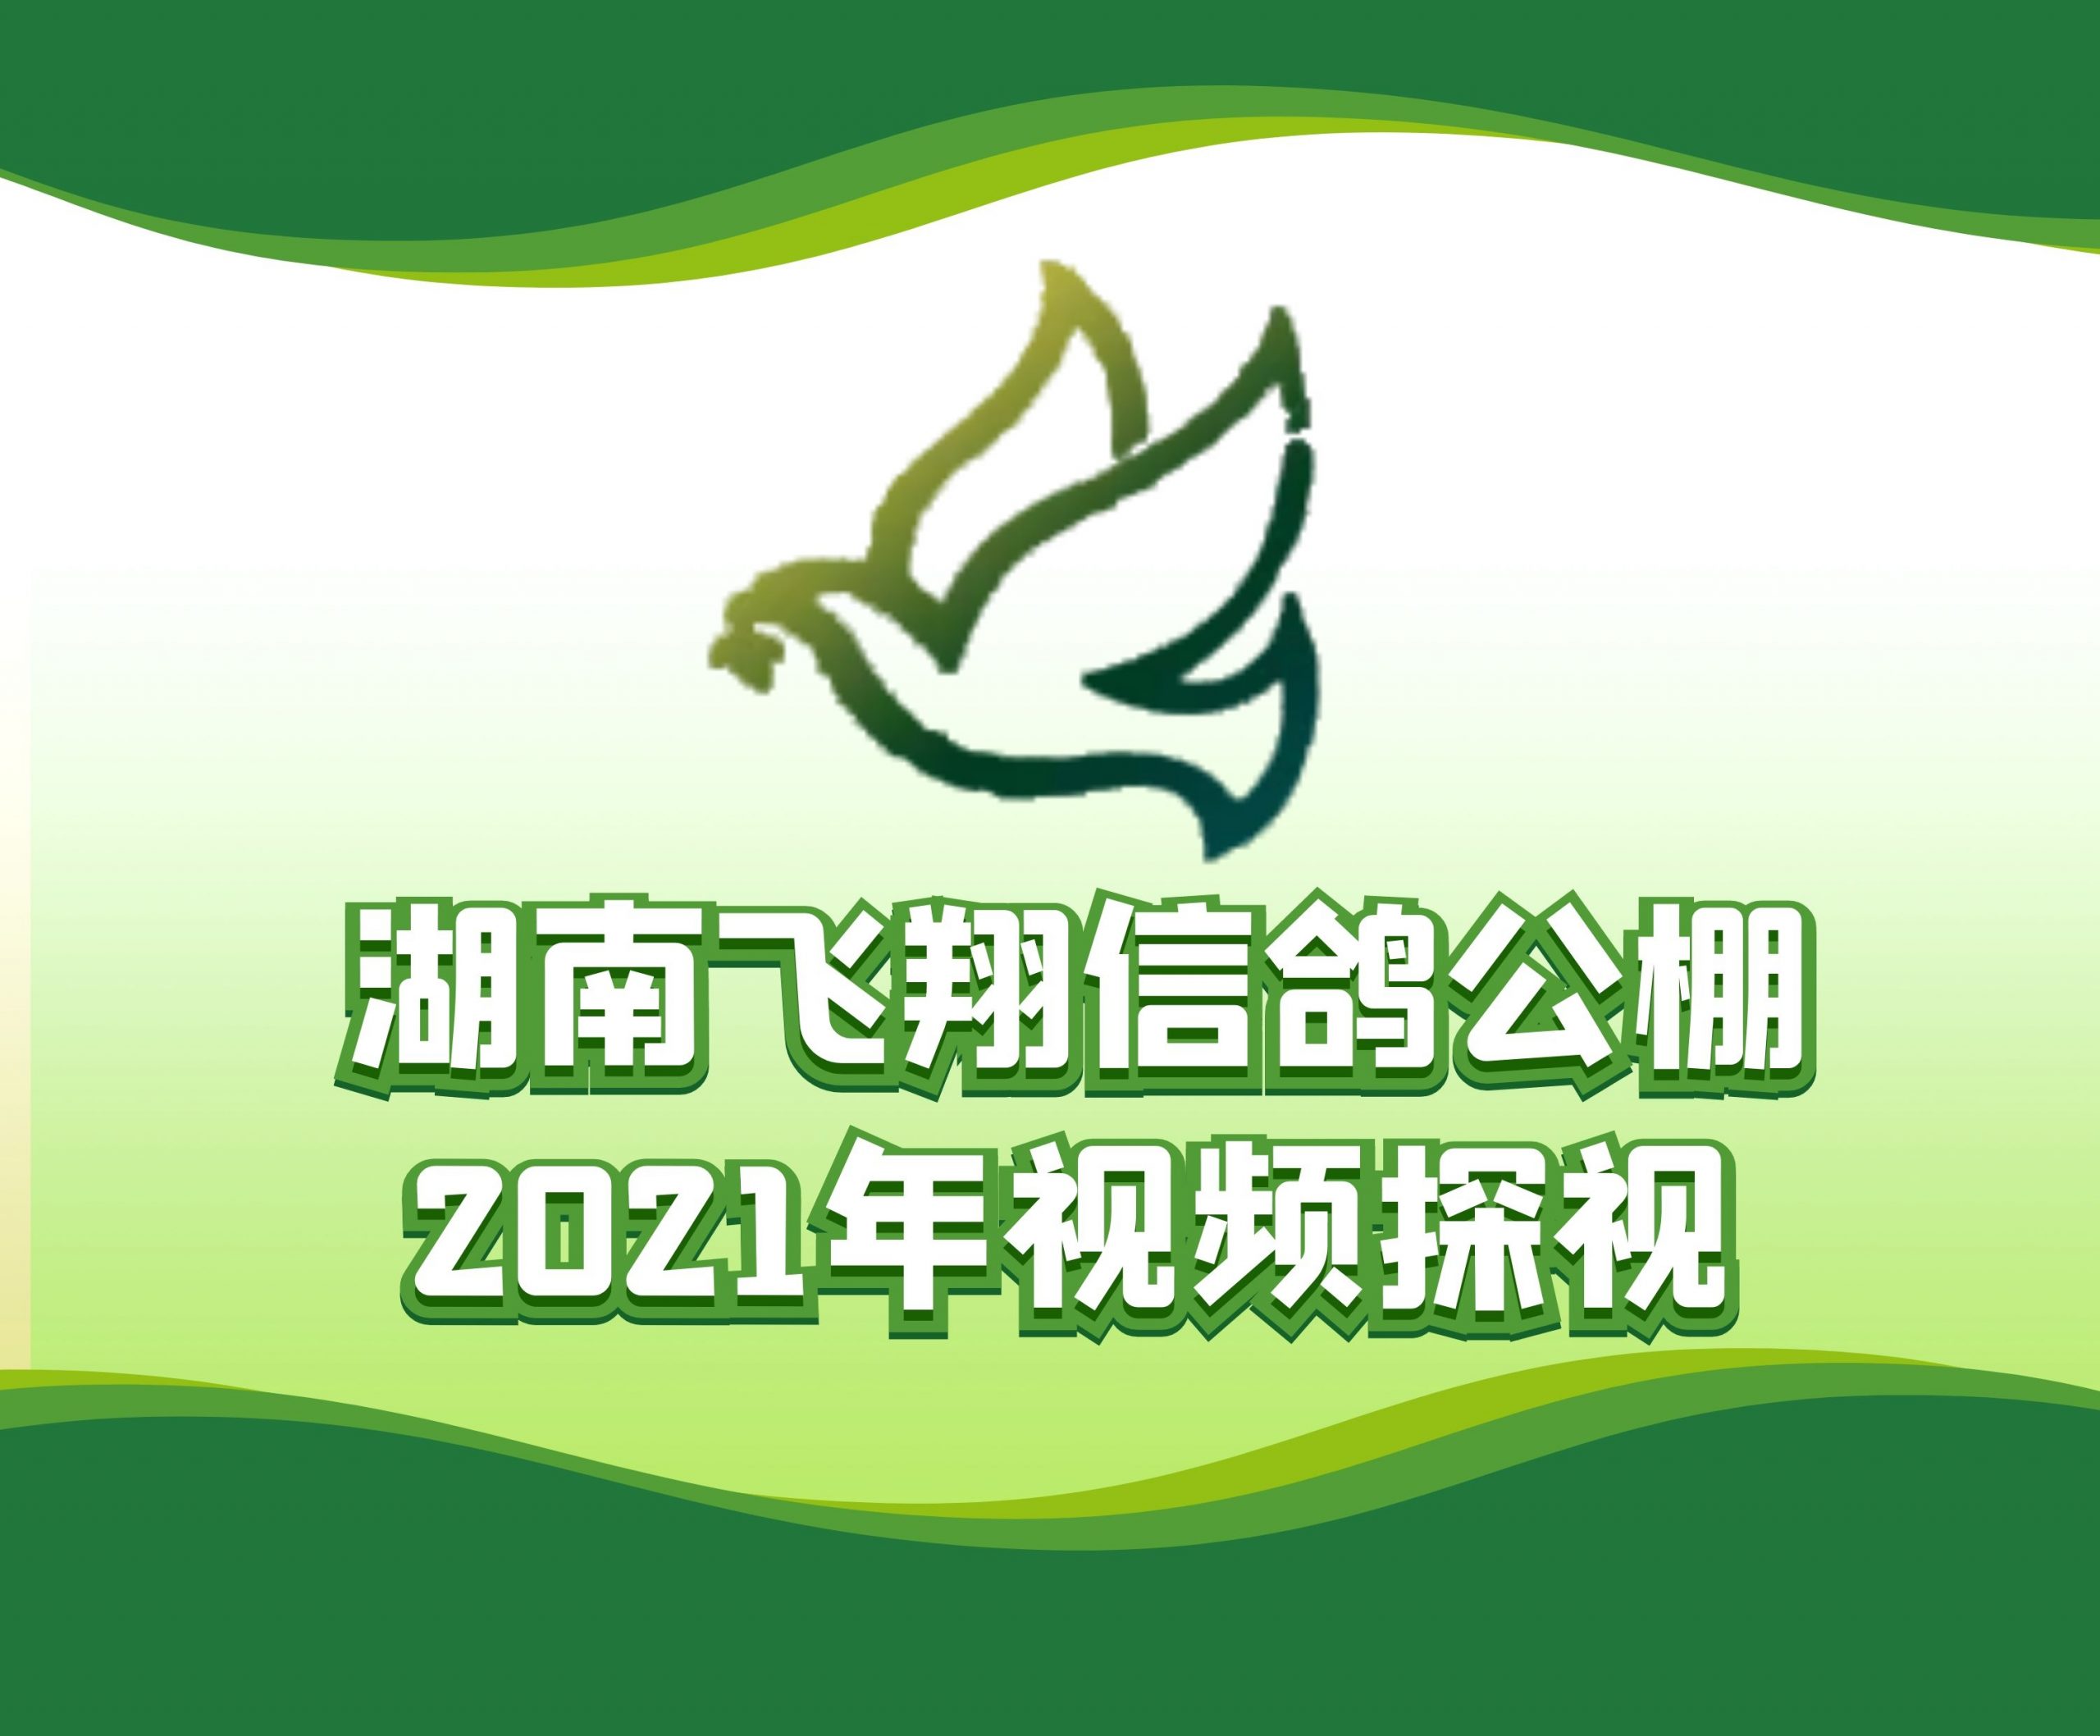 昌山信鸽-黄伟民-2021-14-0127022